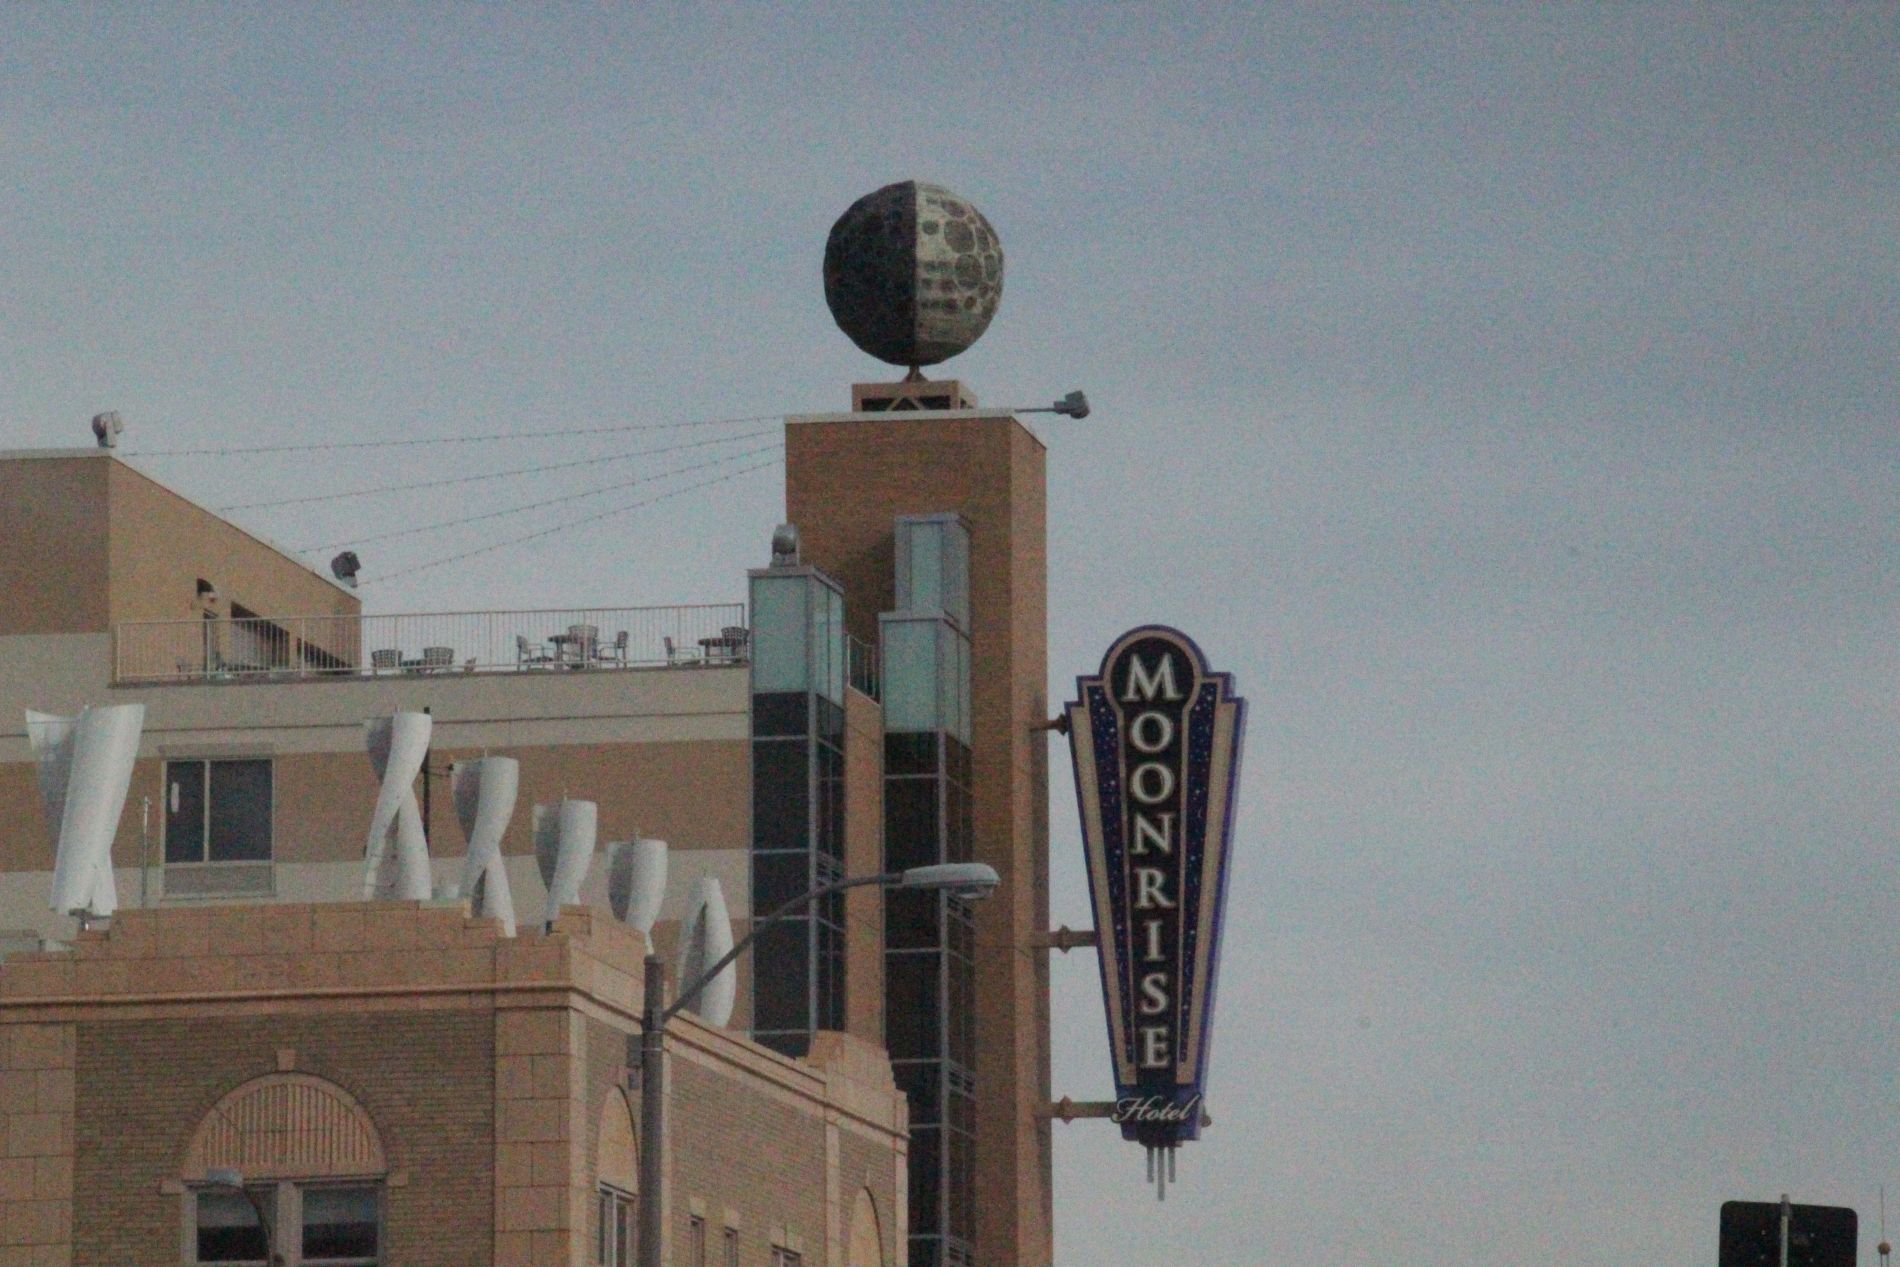 Moonrise Hotel exterior in St. Louis, Missouri